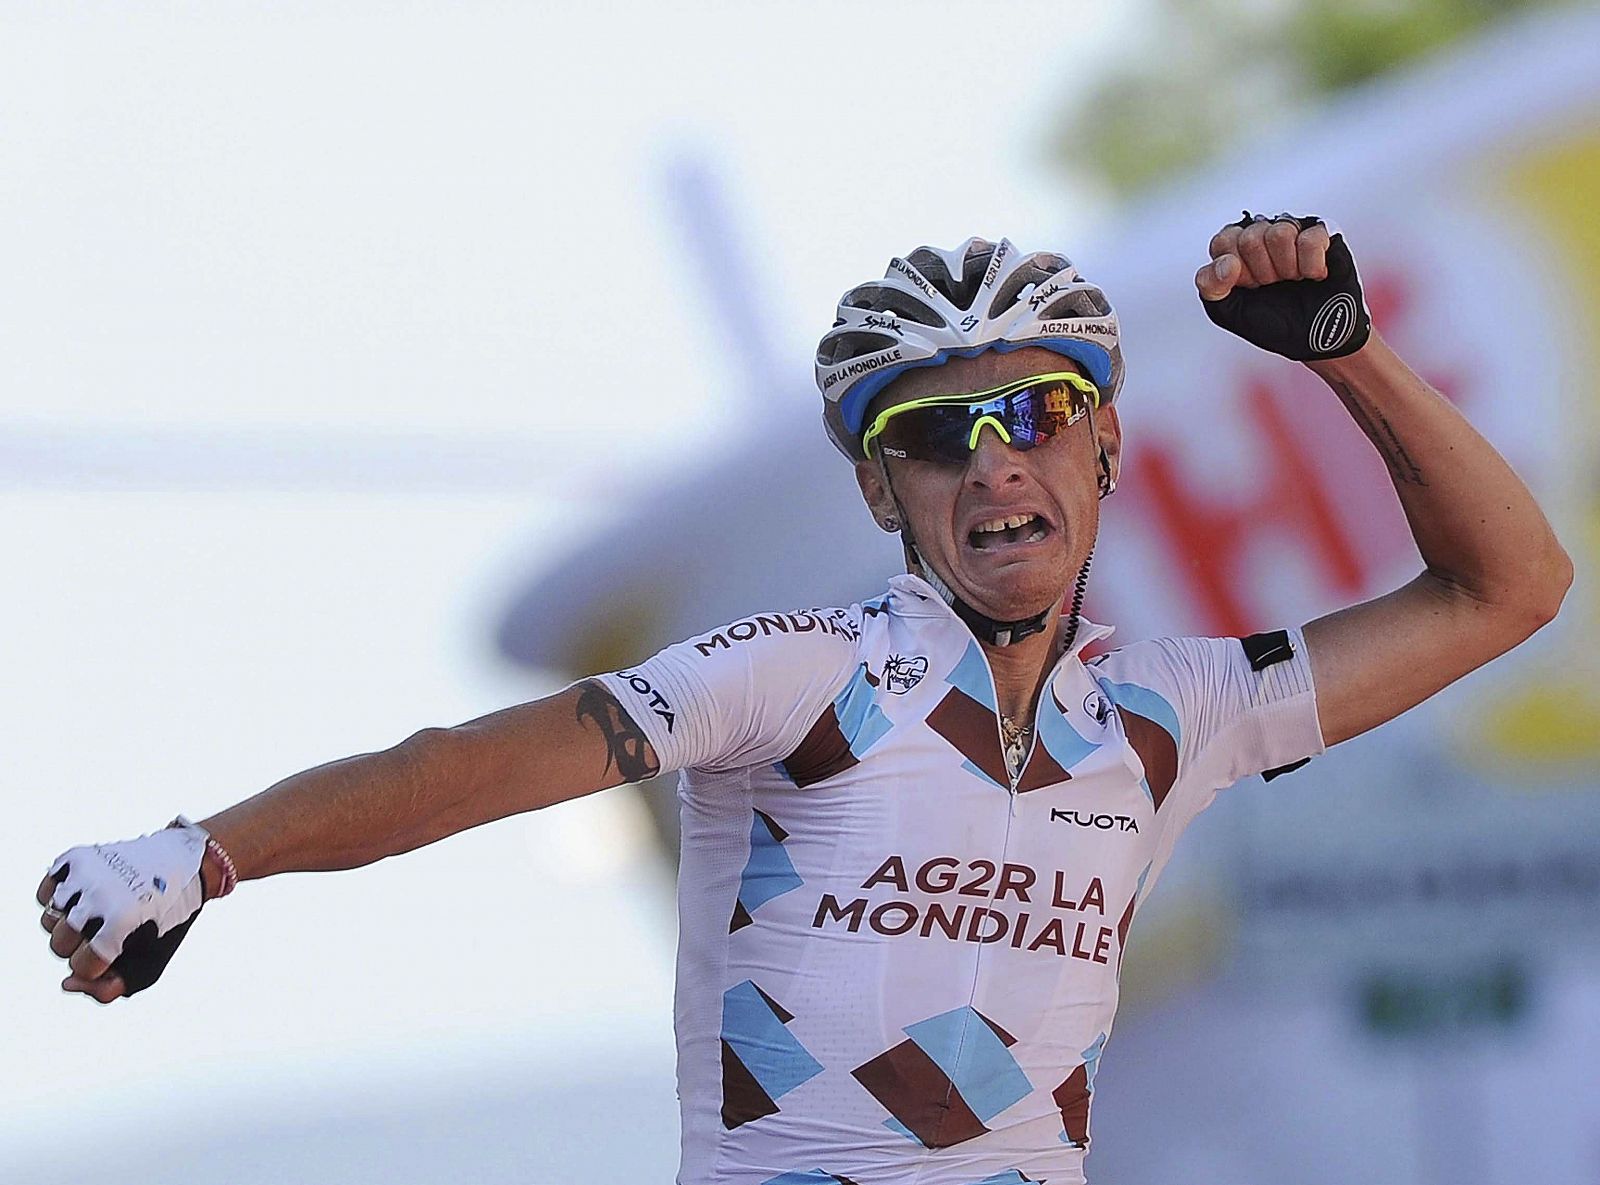 El ciclista francés John Gadret, del equipo Ag2R, celebra su victoria en la undécima etapa del 94 Giro de Italia, en Castelfidardo.